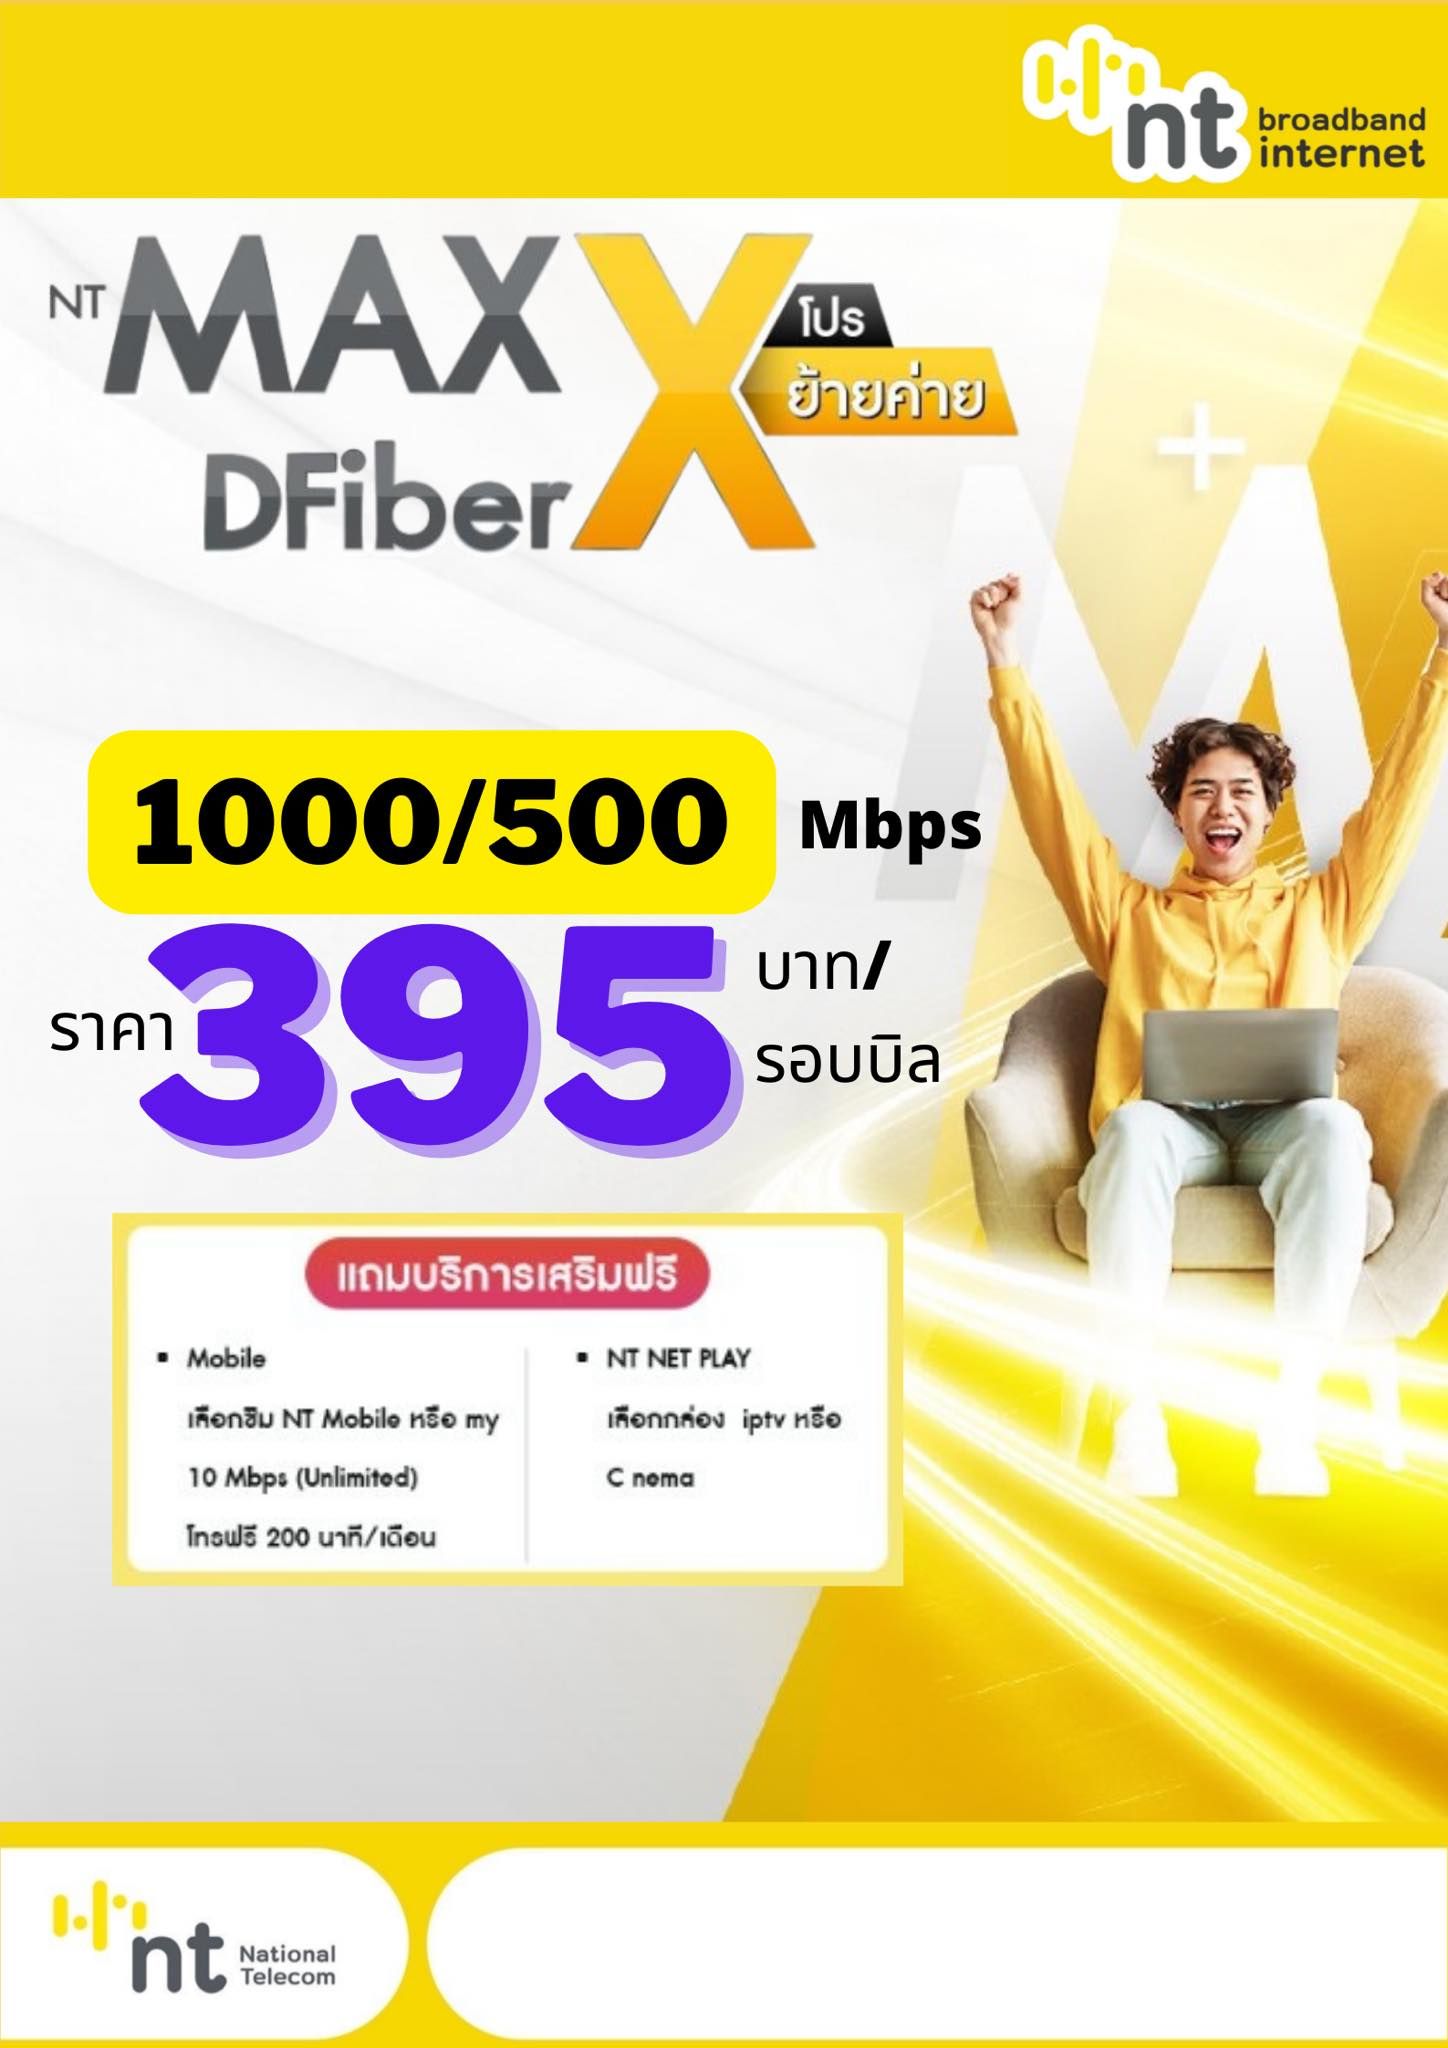 คุ้มสุด! ย้ายค่ายมา NT MAX DFiber เน็ตแรง 1000 Mbps แค่ 395 บาท ฟรีซิมเน็ตไม่อั้น + โทรฟรี 200 นาที